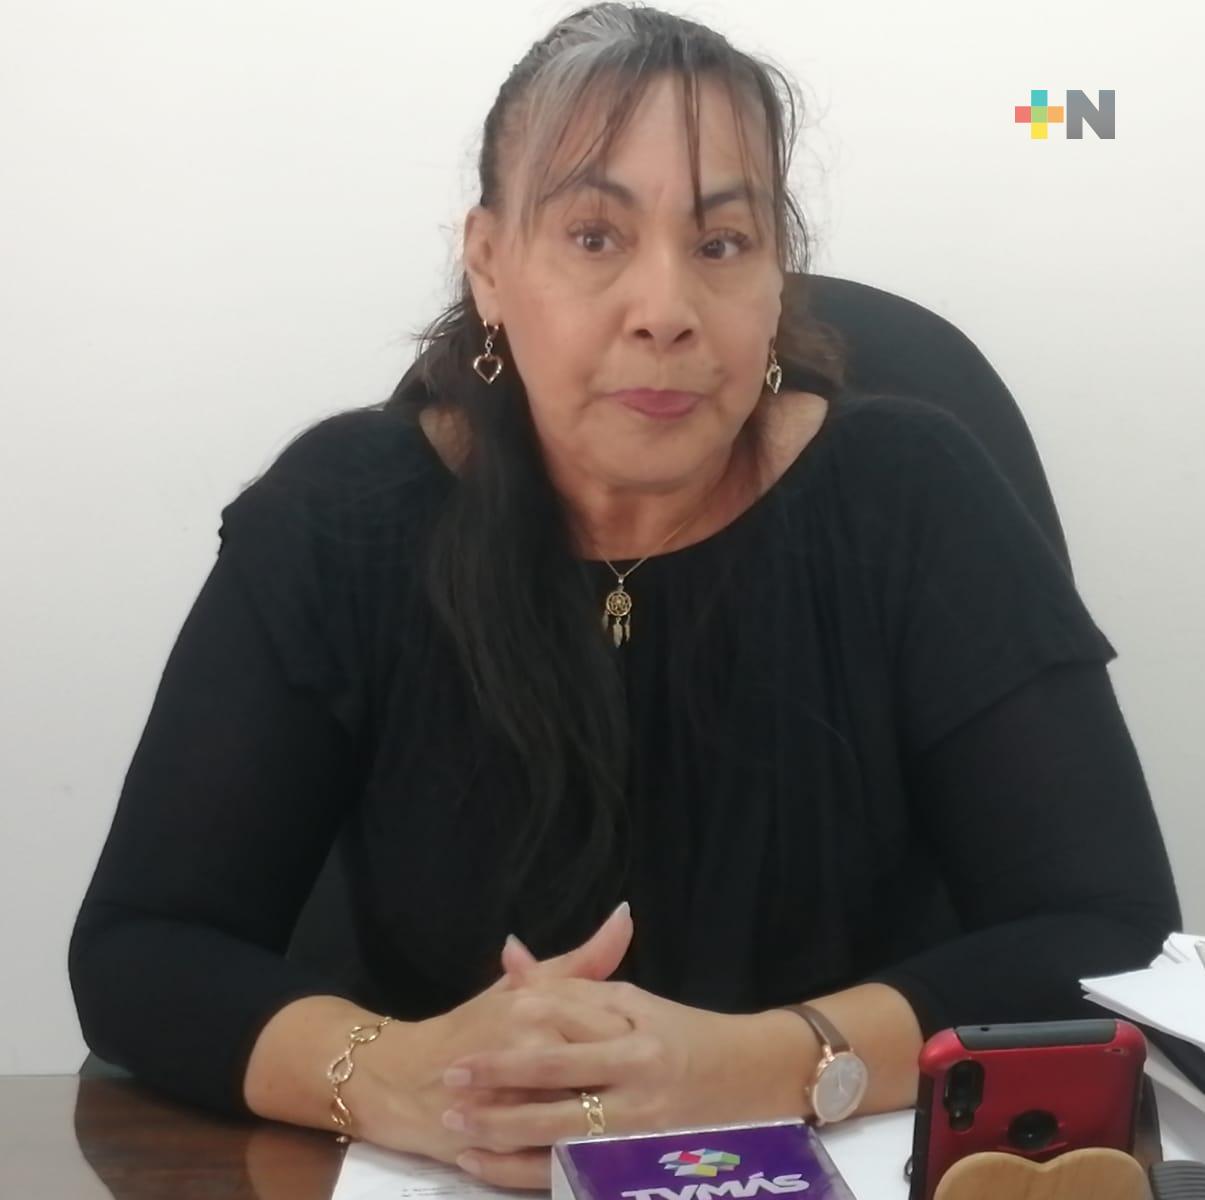 Ayuntamiento de Veracruz sin aclarar irregularidades con entrega de despensas: regidora